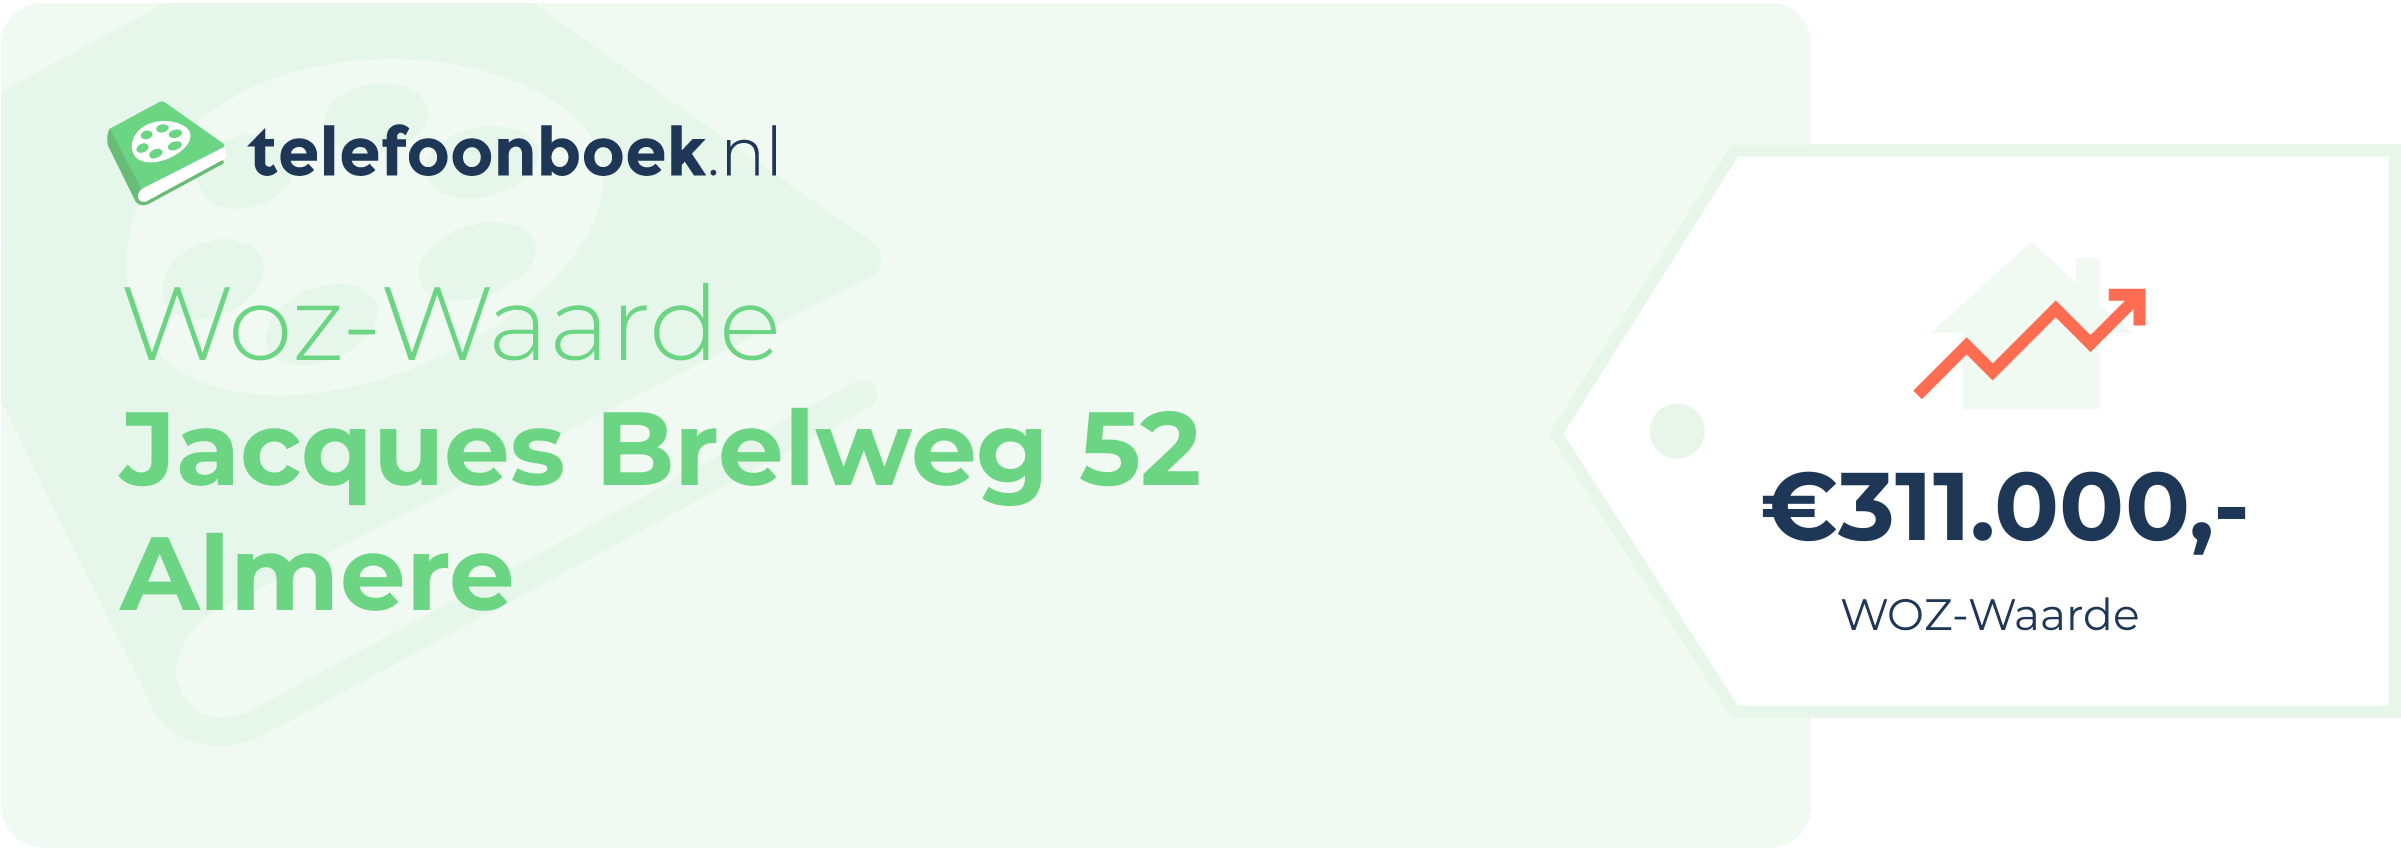 WOZ-waarde Jacques Brelweg 52 Almere